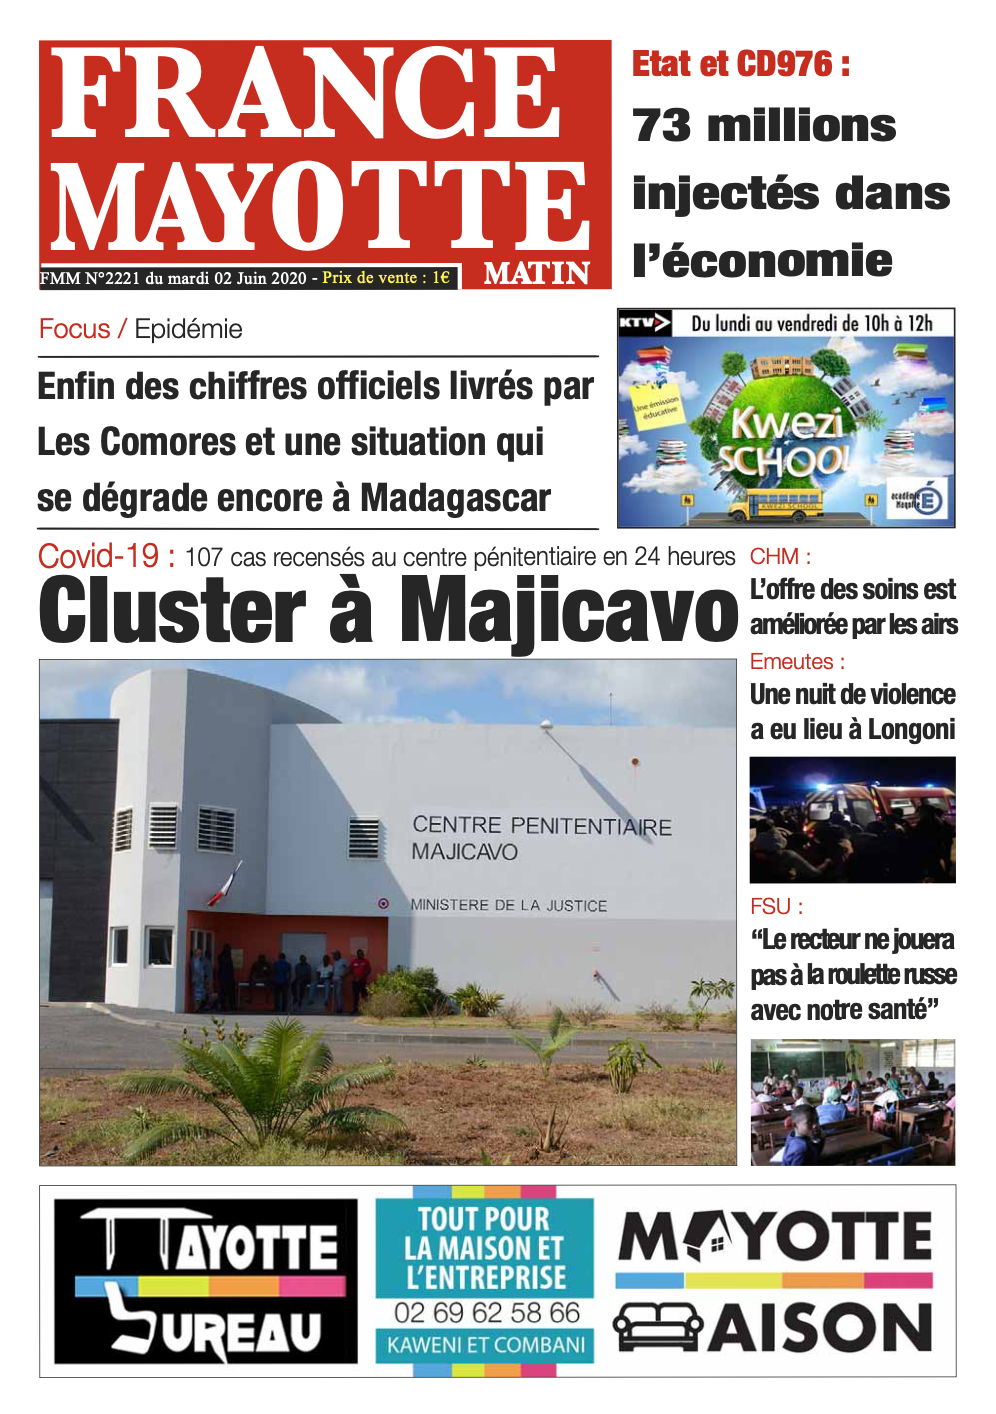 France Mayotte Mardi 2 juin 2020